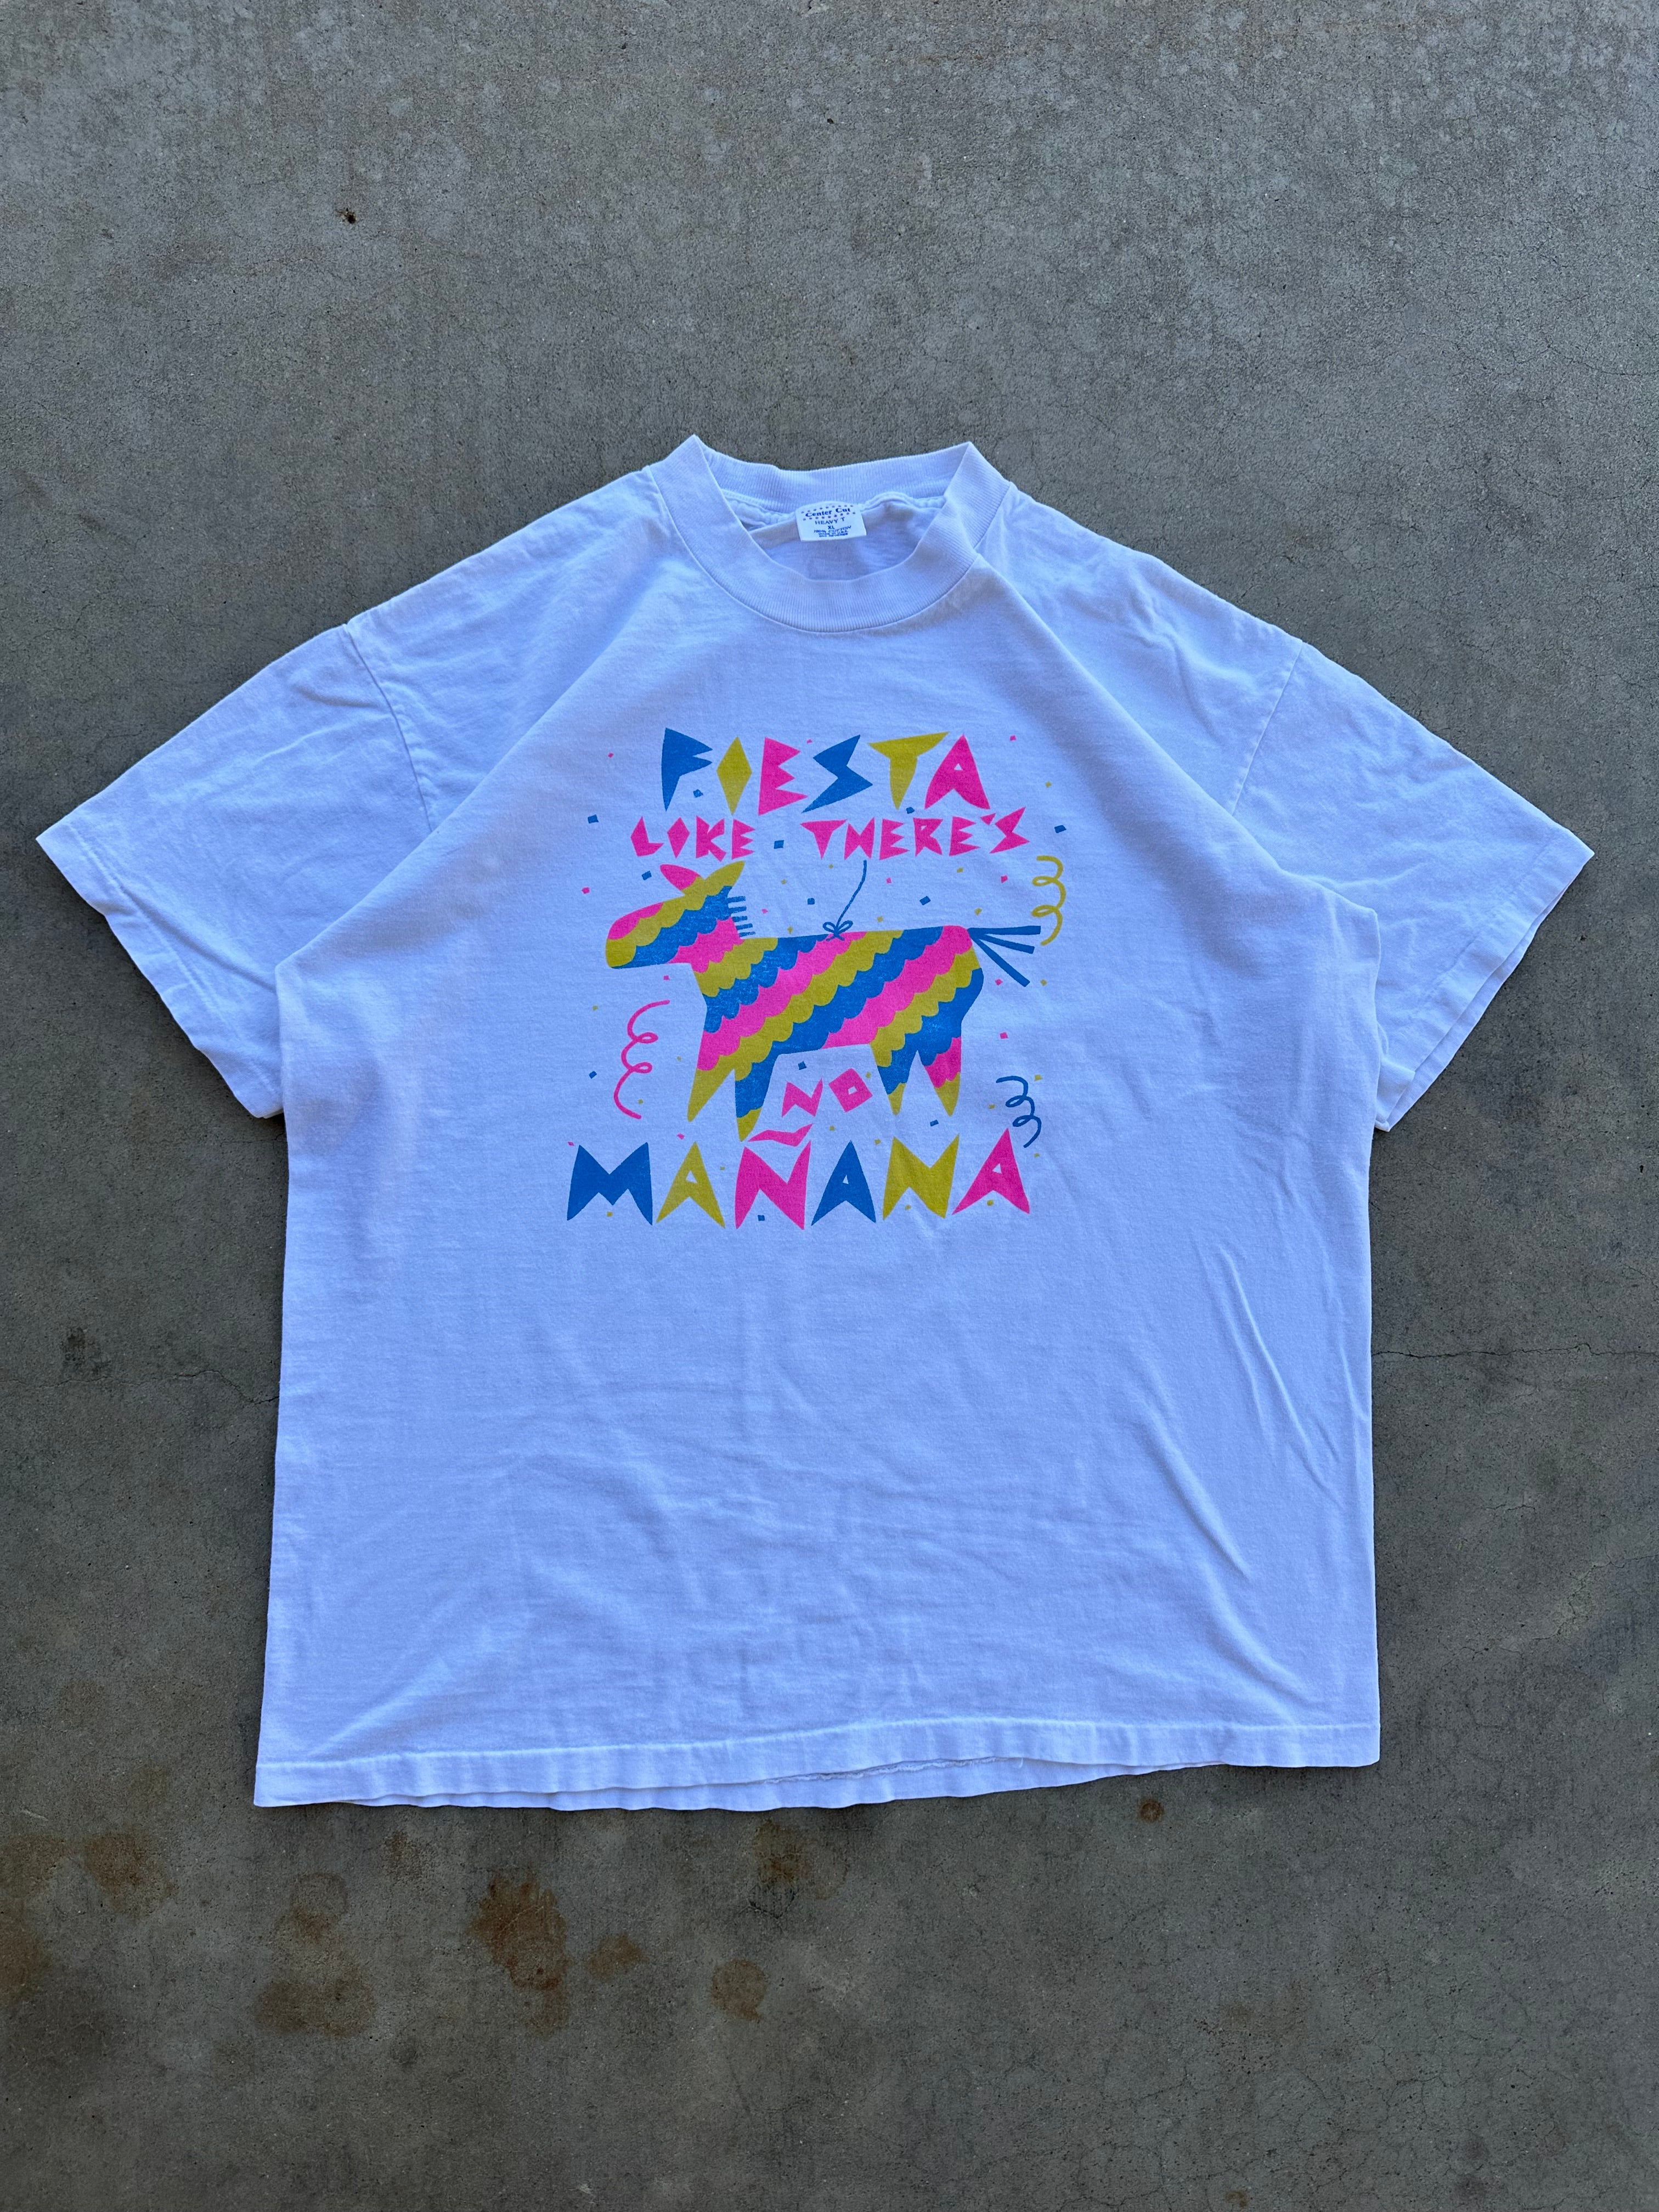 1990s Fiesta Like There’s No Mañana T-Shirt (L/XL)